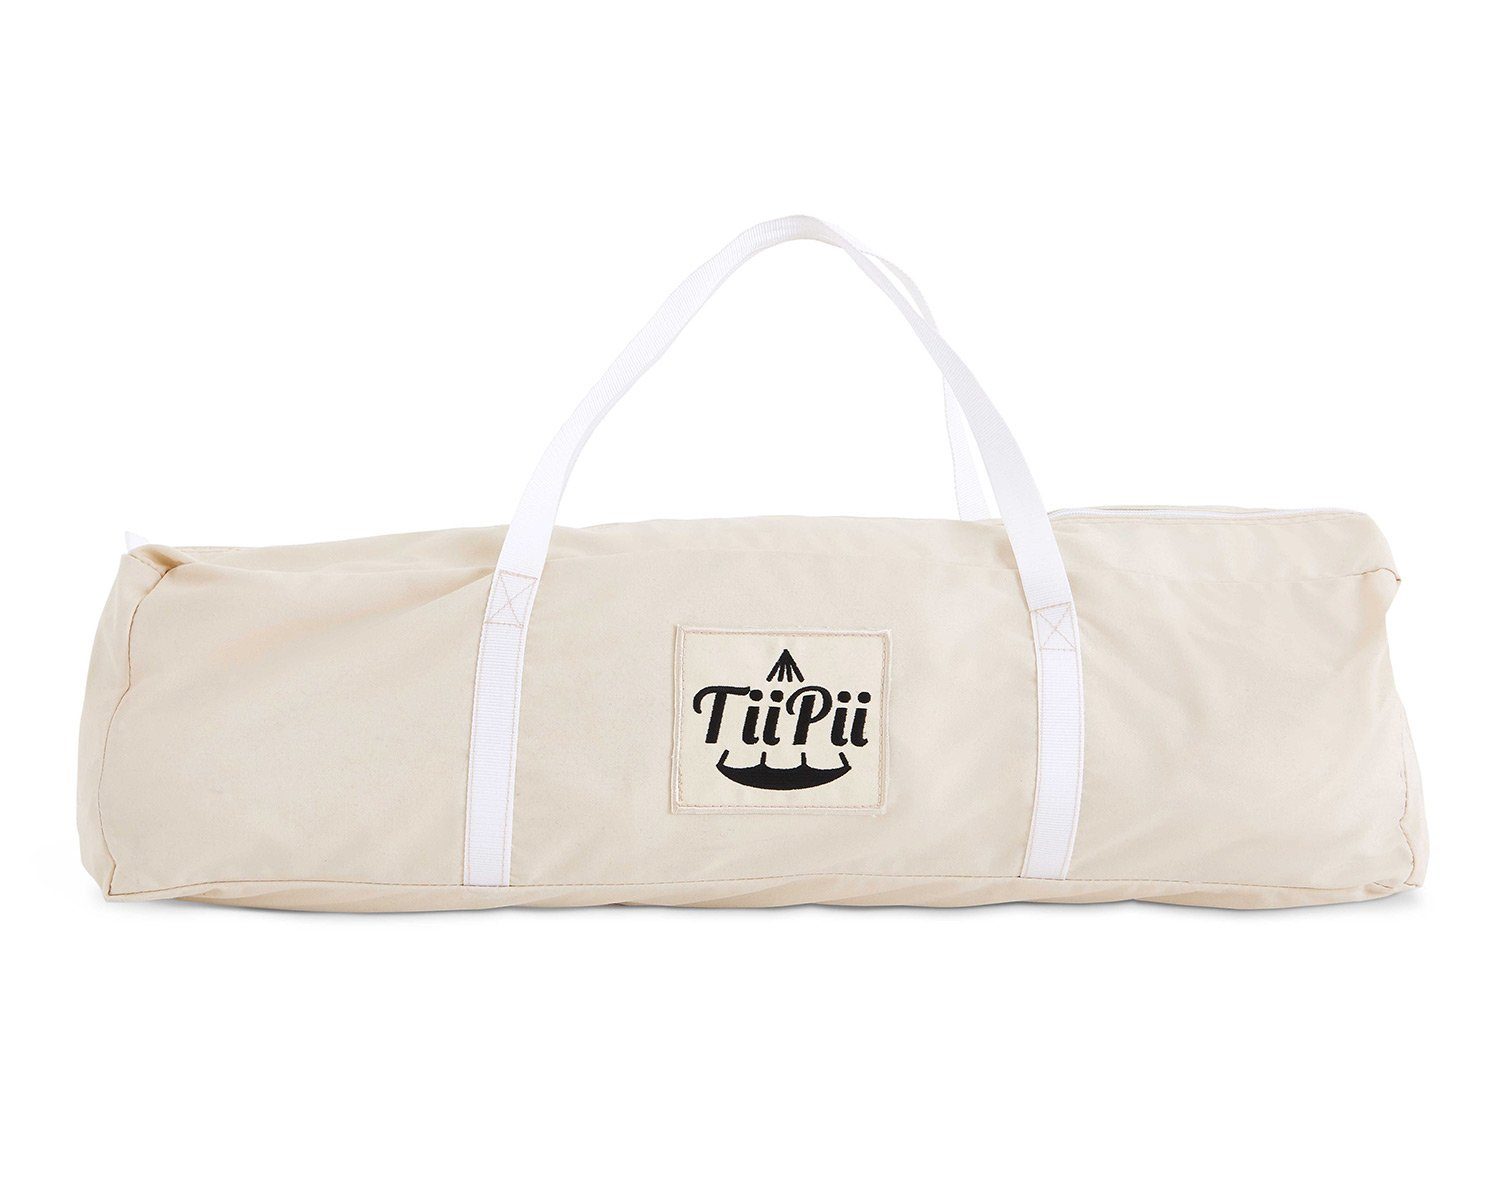 Väska till TiiPii hänggunga.